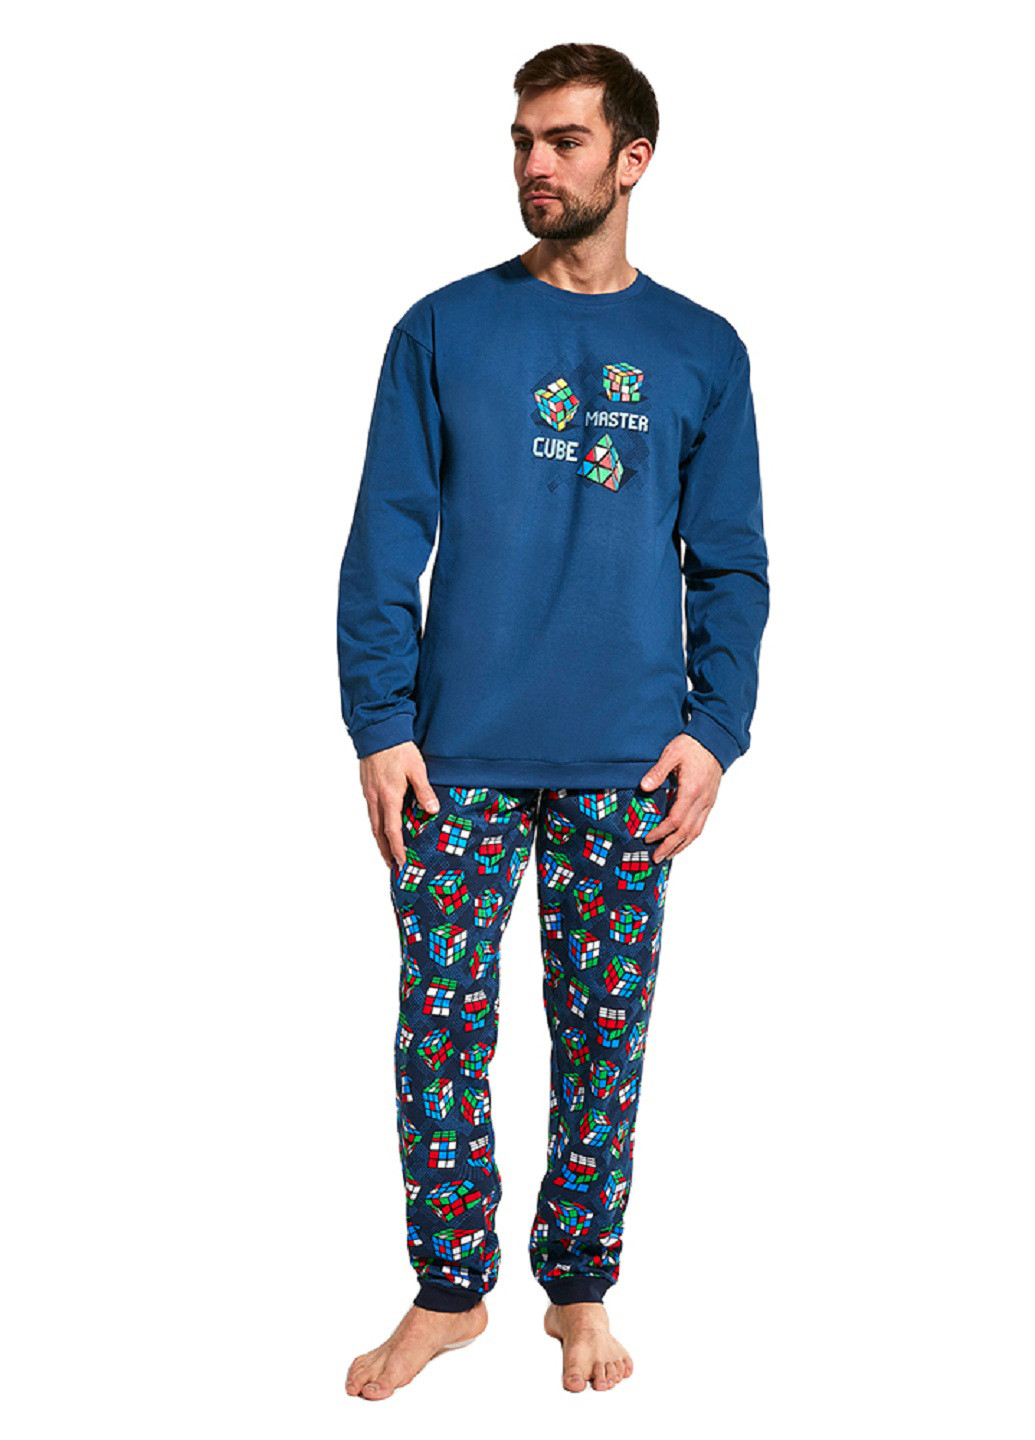 Піжама (світшот, брюки) Cornette свитшот + брюки малюнок синя домашня бавовна, трикотаж